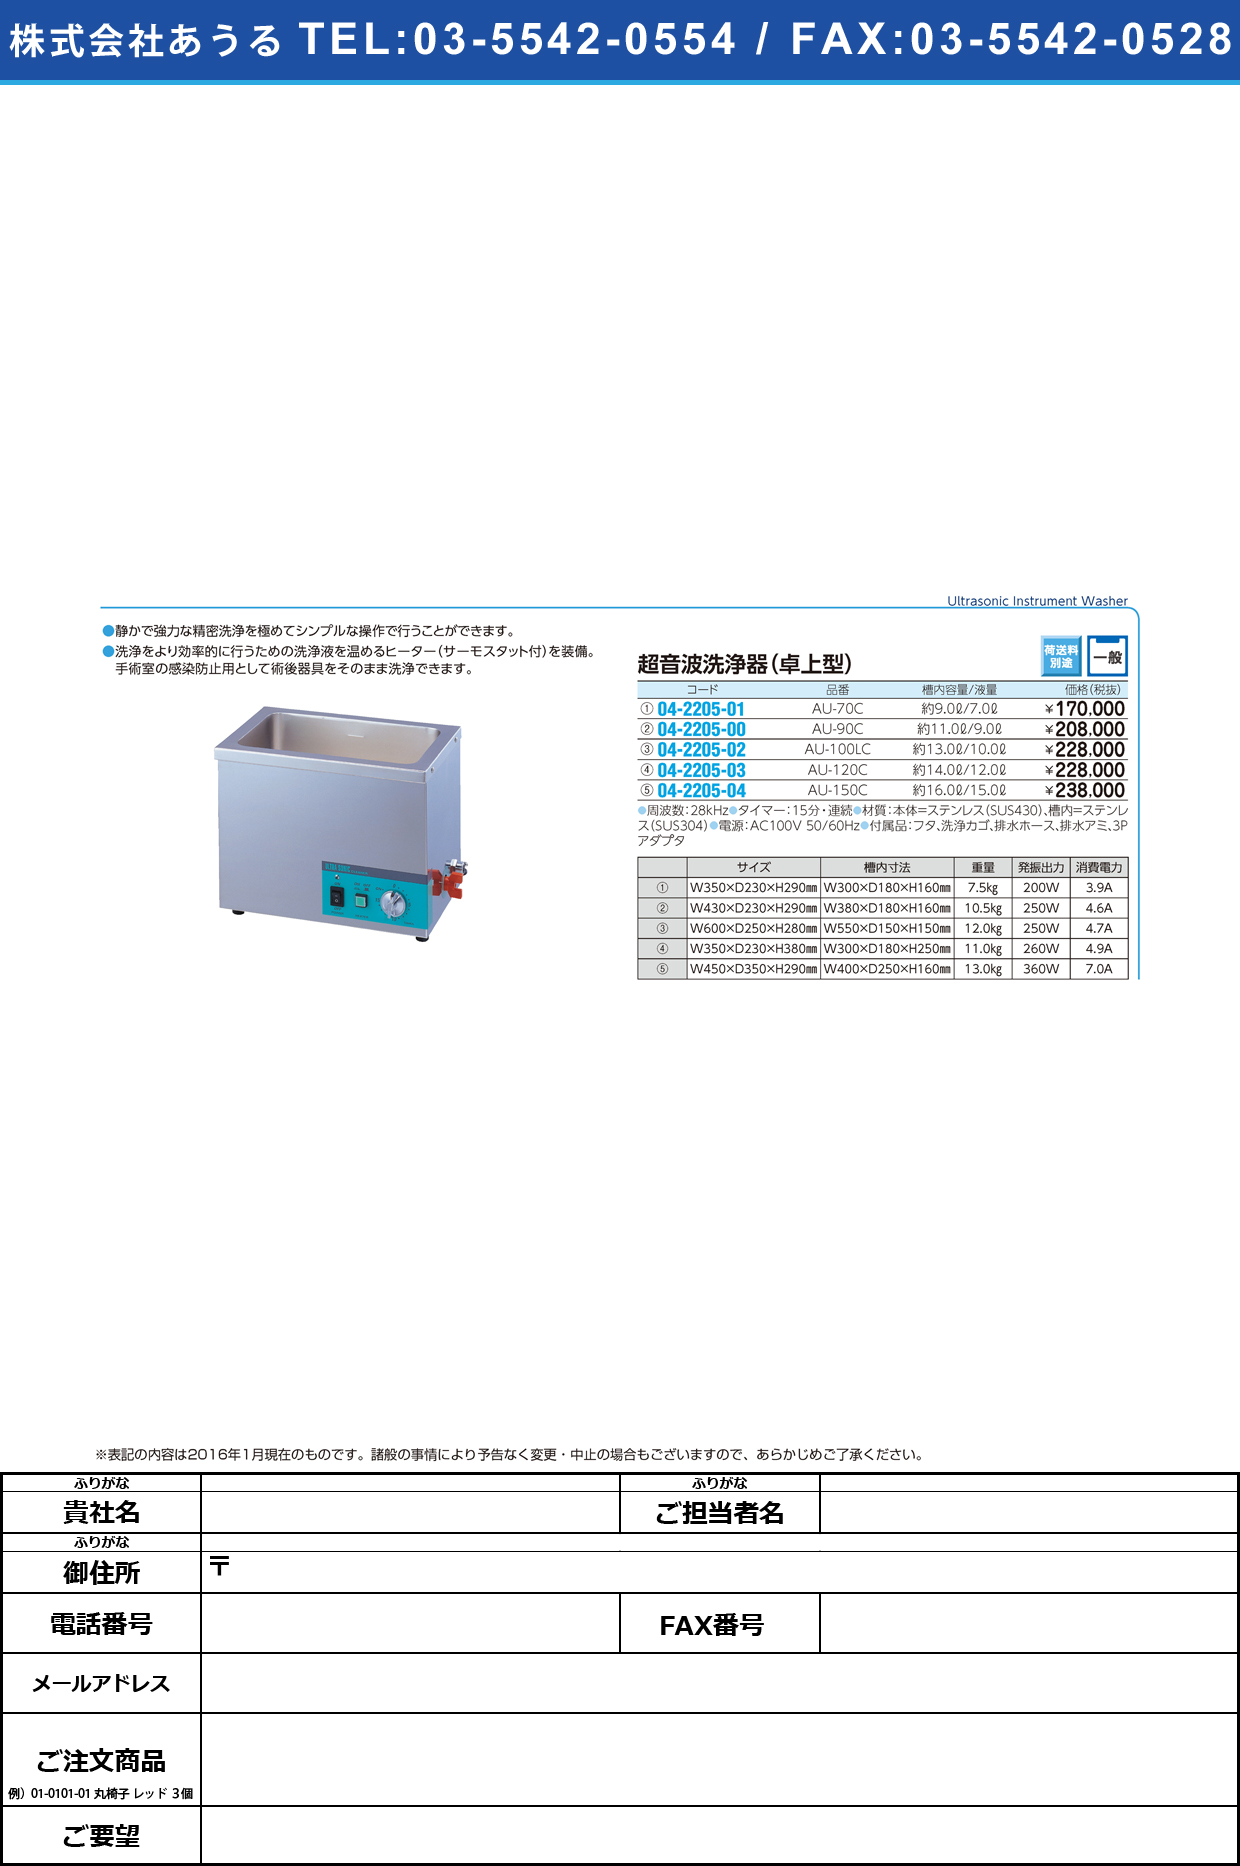 (04-2205-03)超音波洗浄器（卓上型） ﾁｮｳｵﾝﾊﾟｾﾝｼﾞｮｳｷﾀｸｼﾞｮｳ AU-120C【1台単位】【2016年カタログ商品】